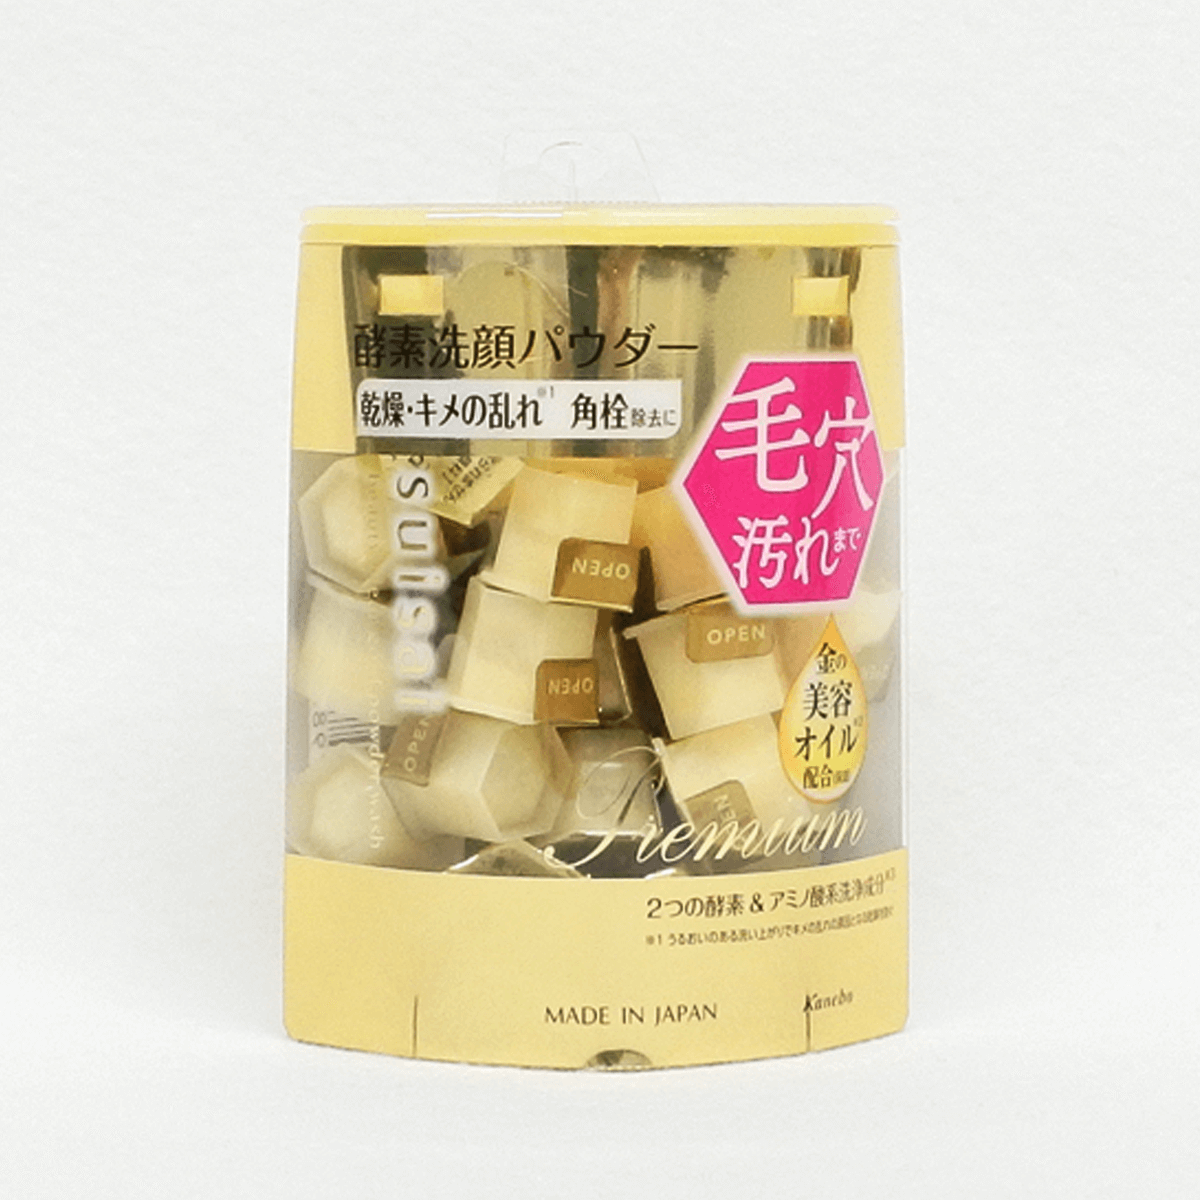 佳麗寶 suisai 緻潤淨透金黃酵素粉 0.4g×32個